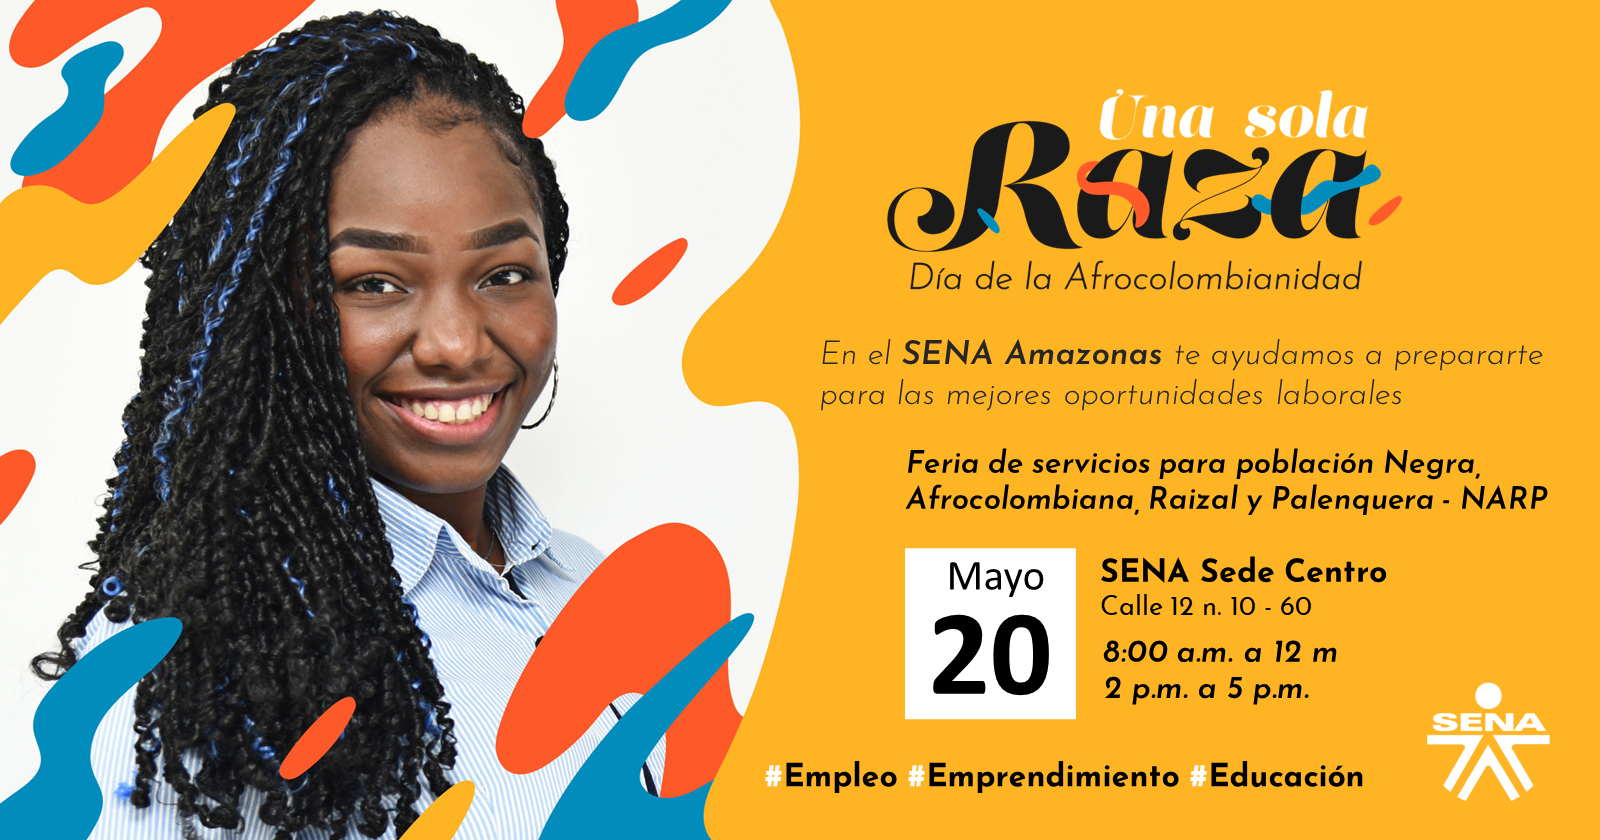 Participa este 20 de mayo en la Feria de servicios para población Negra, Afrocolombiana, Raizal y Palenquera 